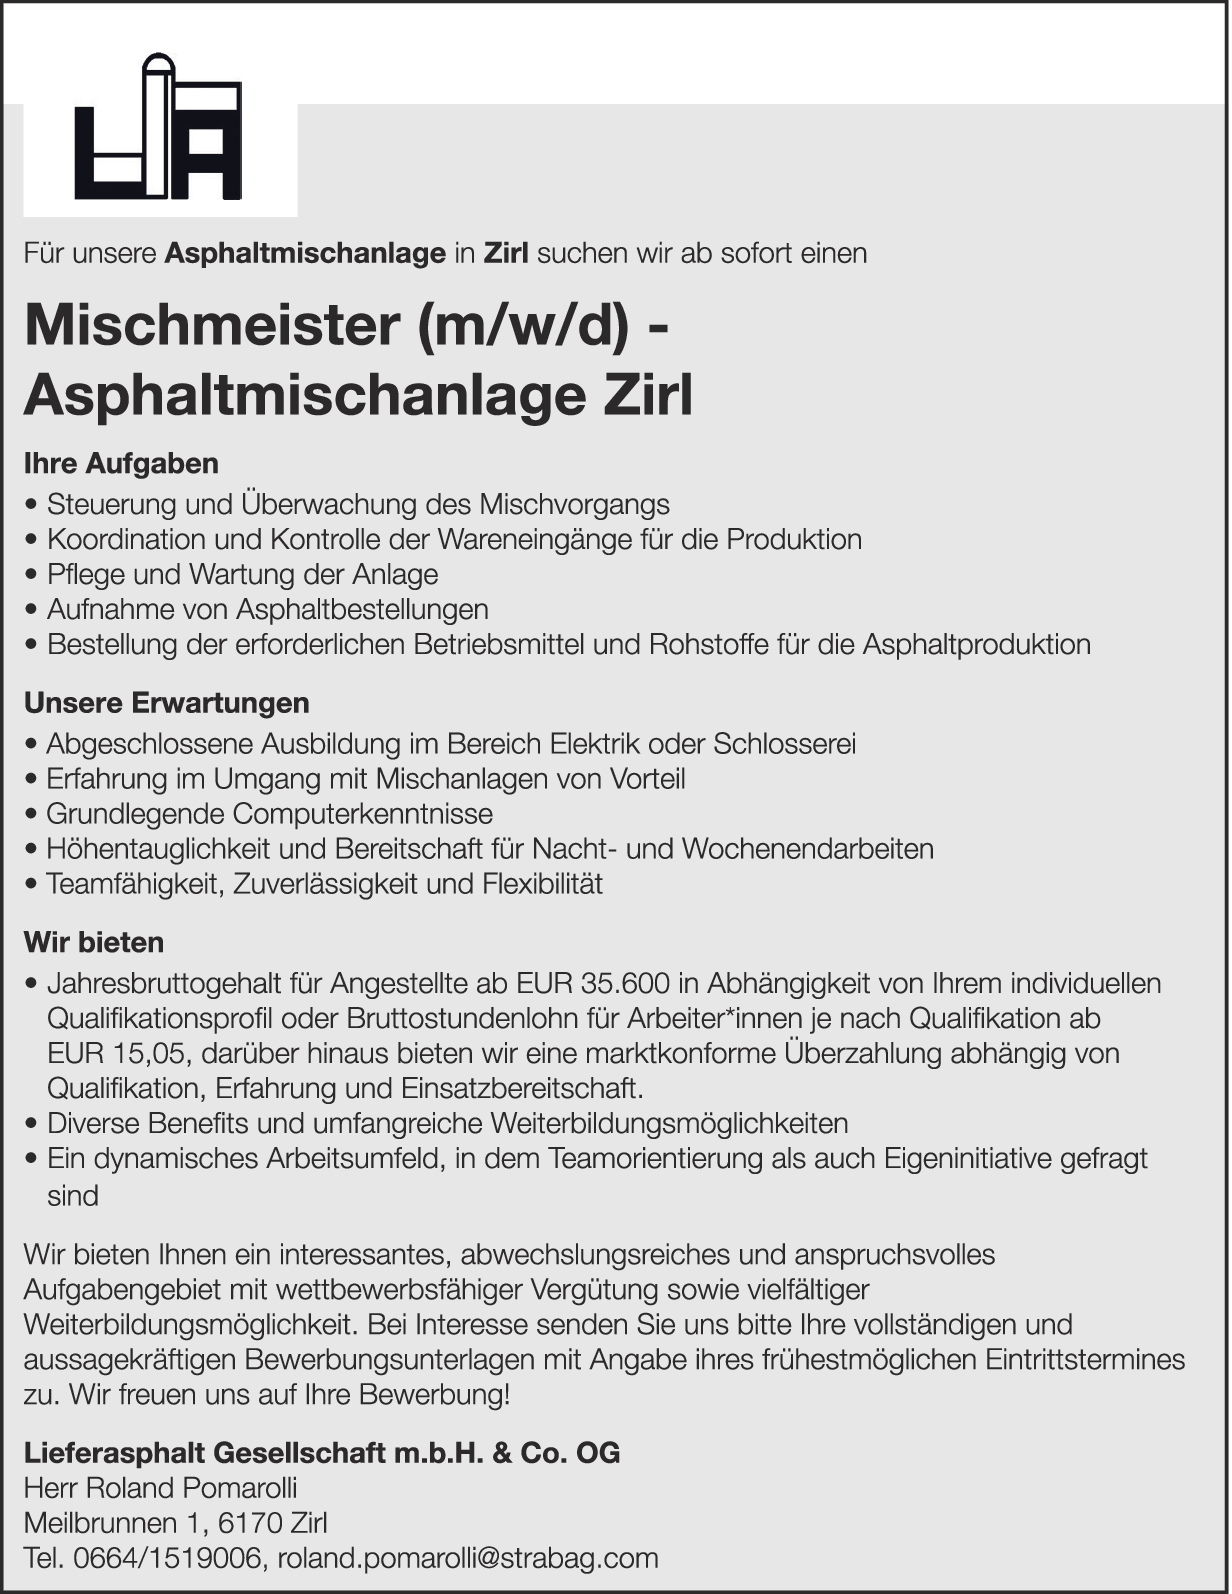 Mischmeister (m/w/d) - Asphaltmischanlage